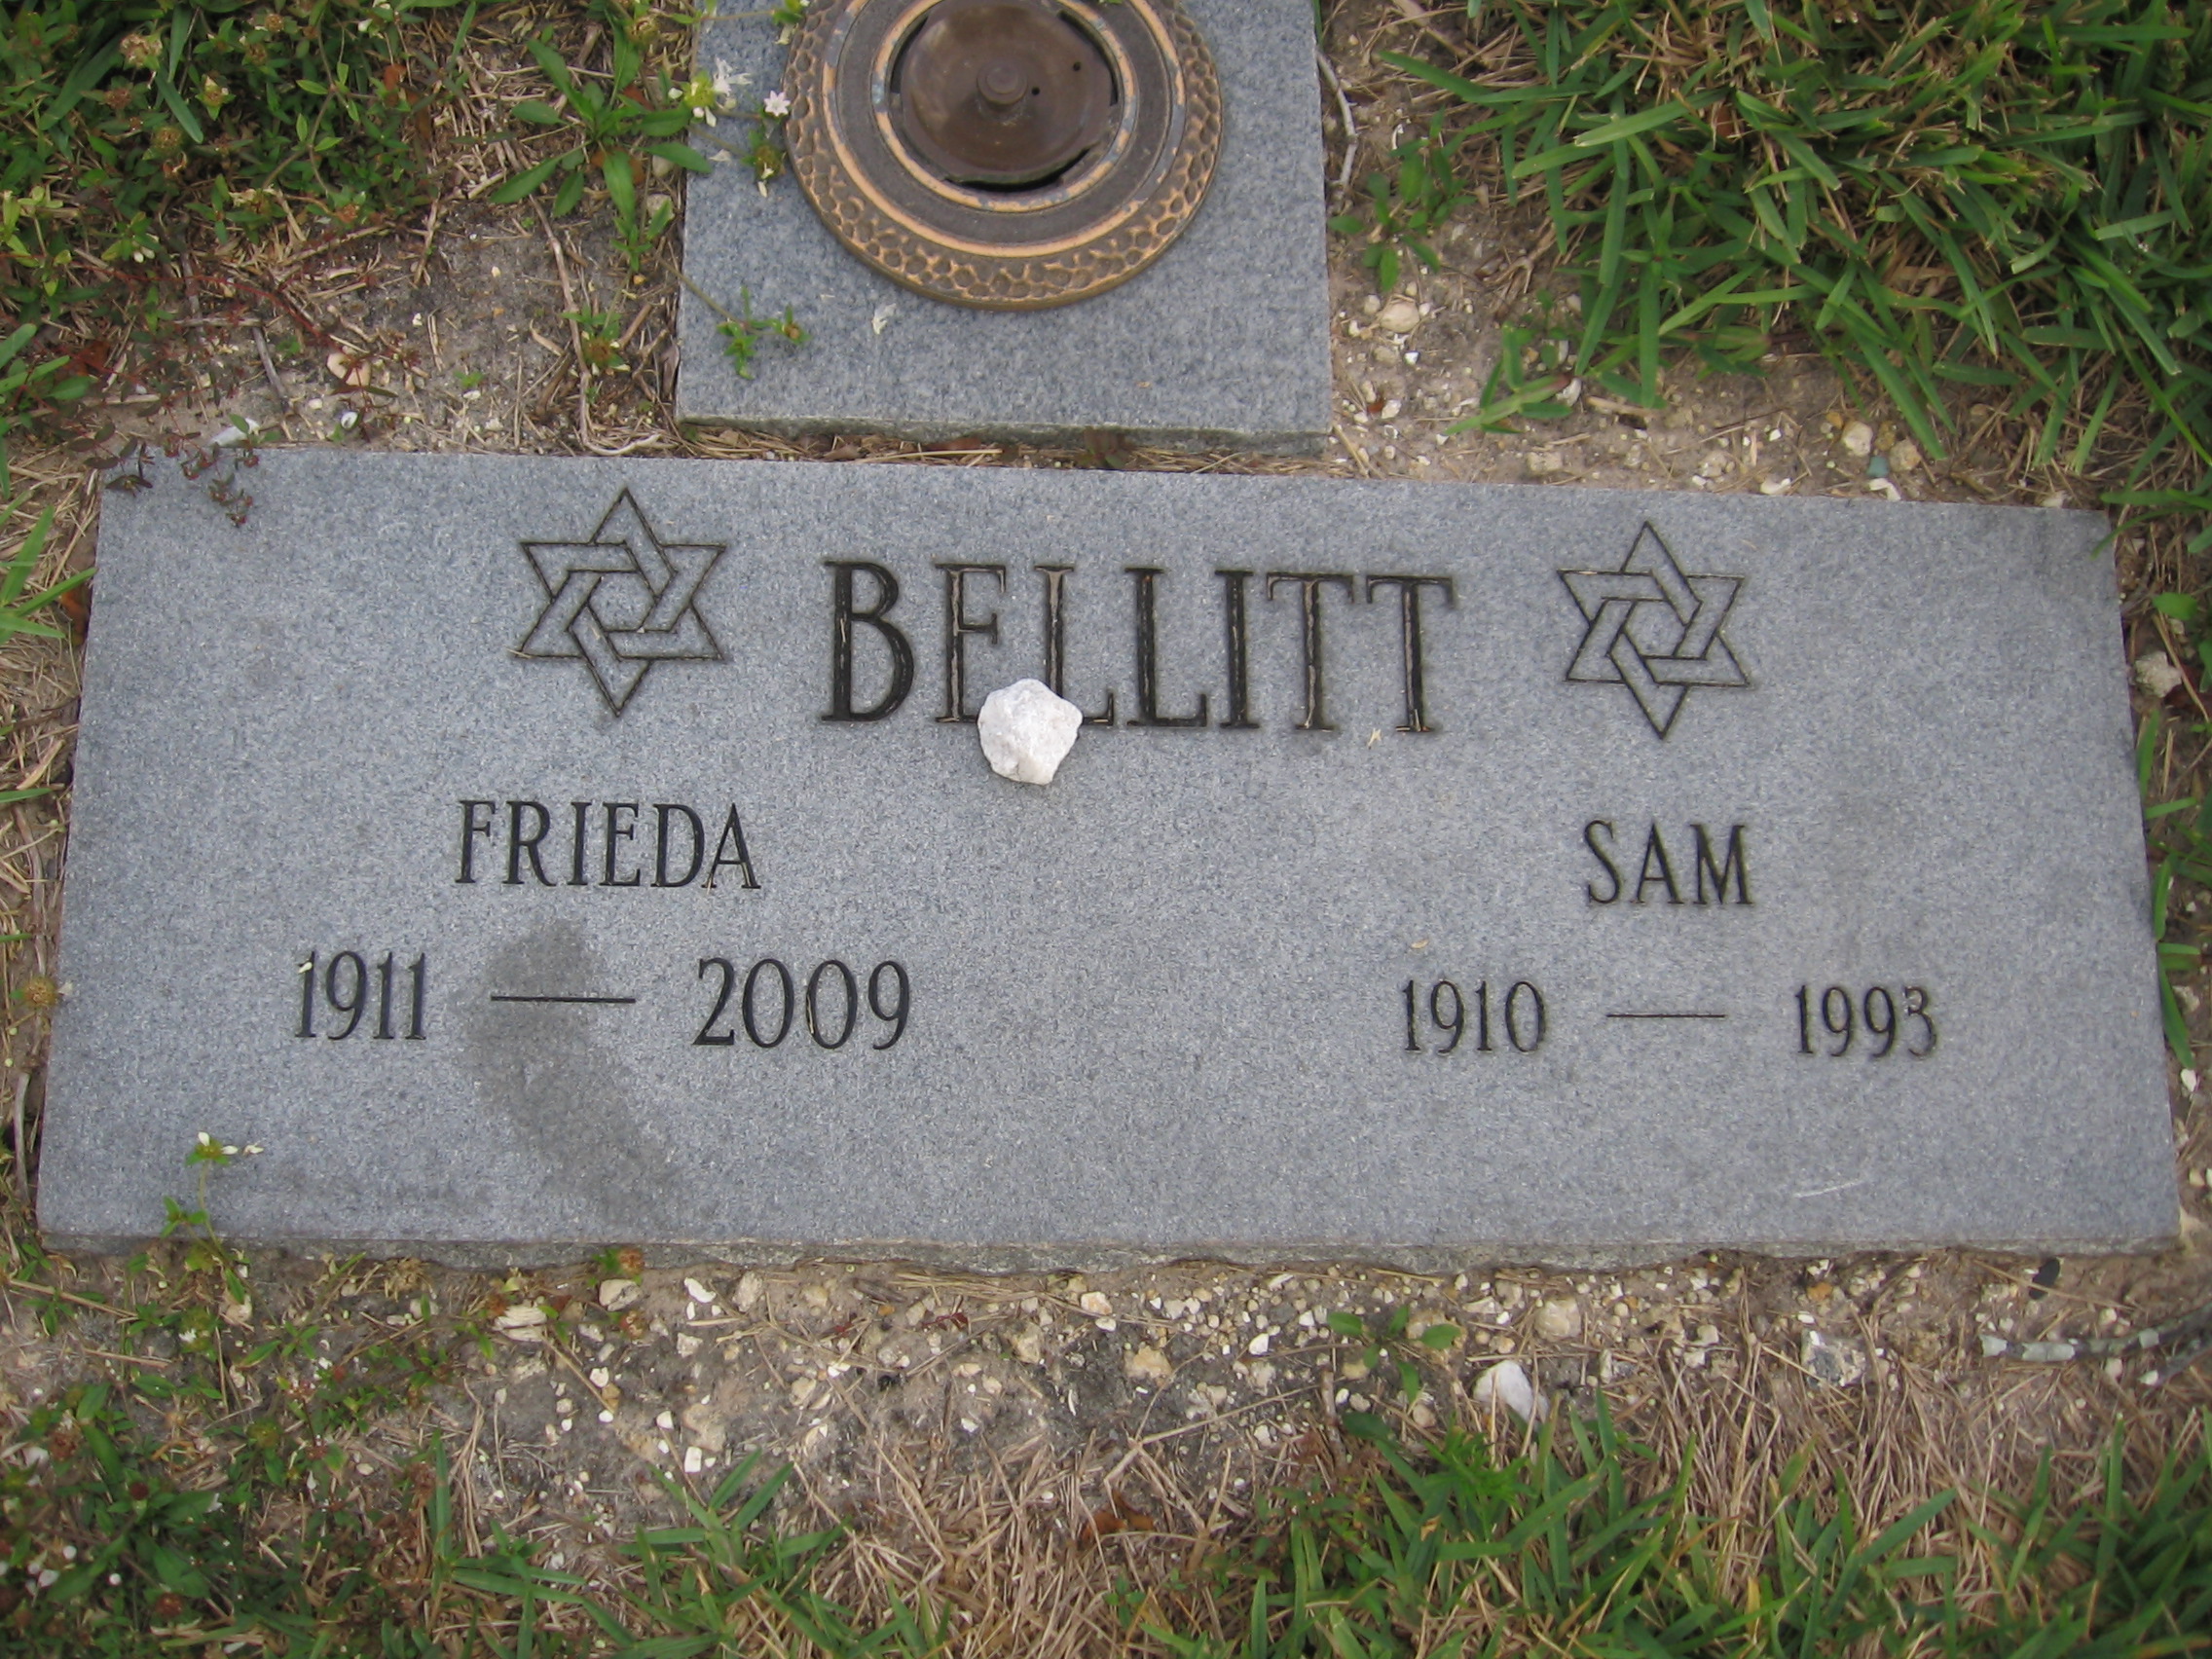 Sam Bellitt